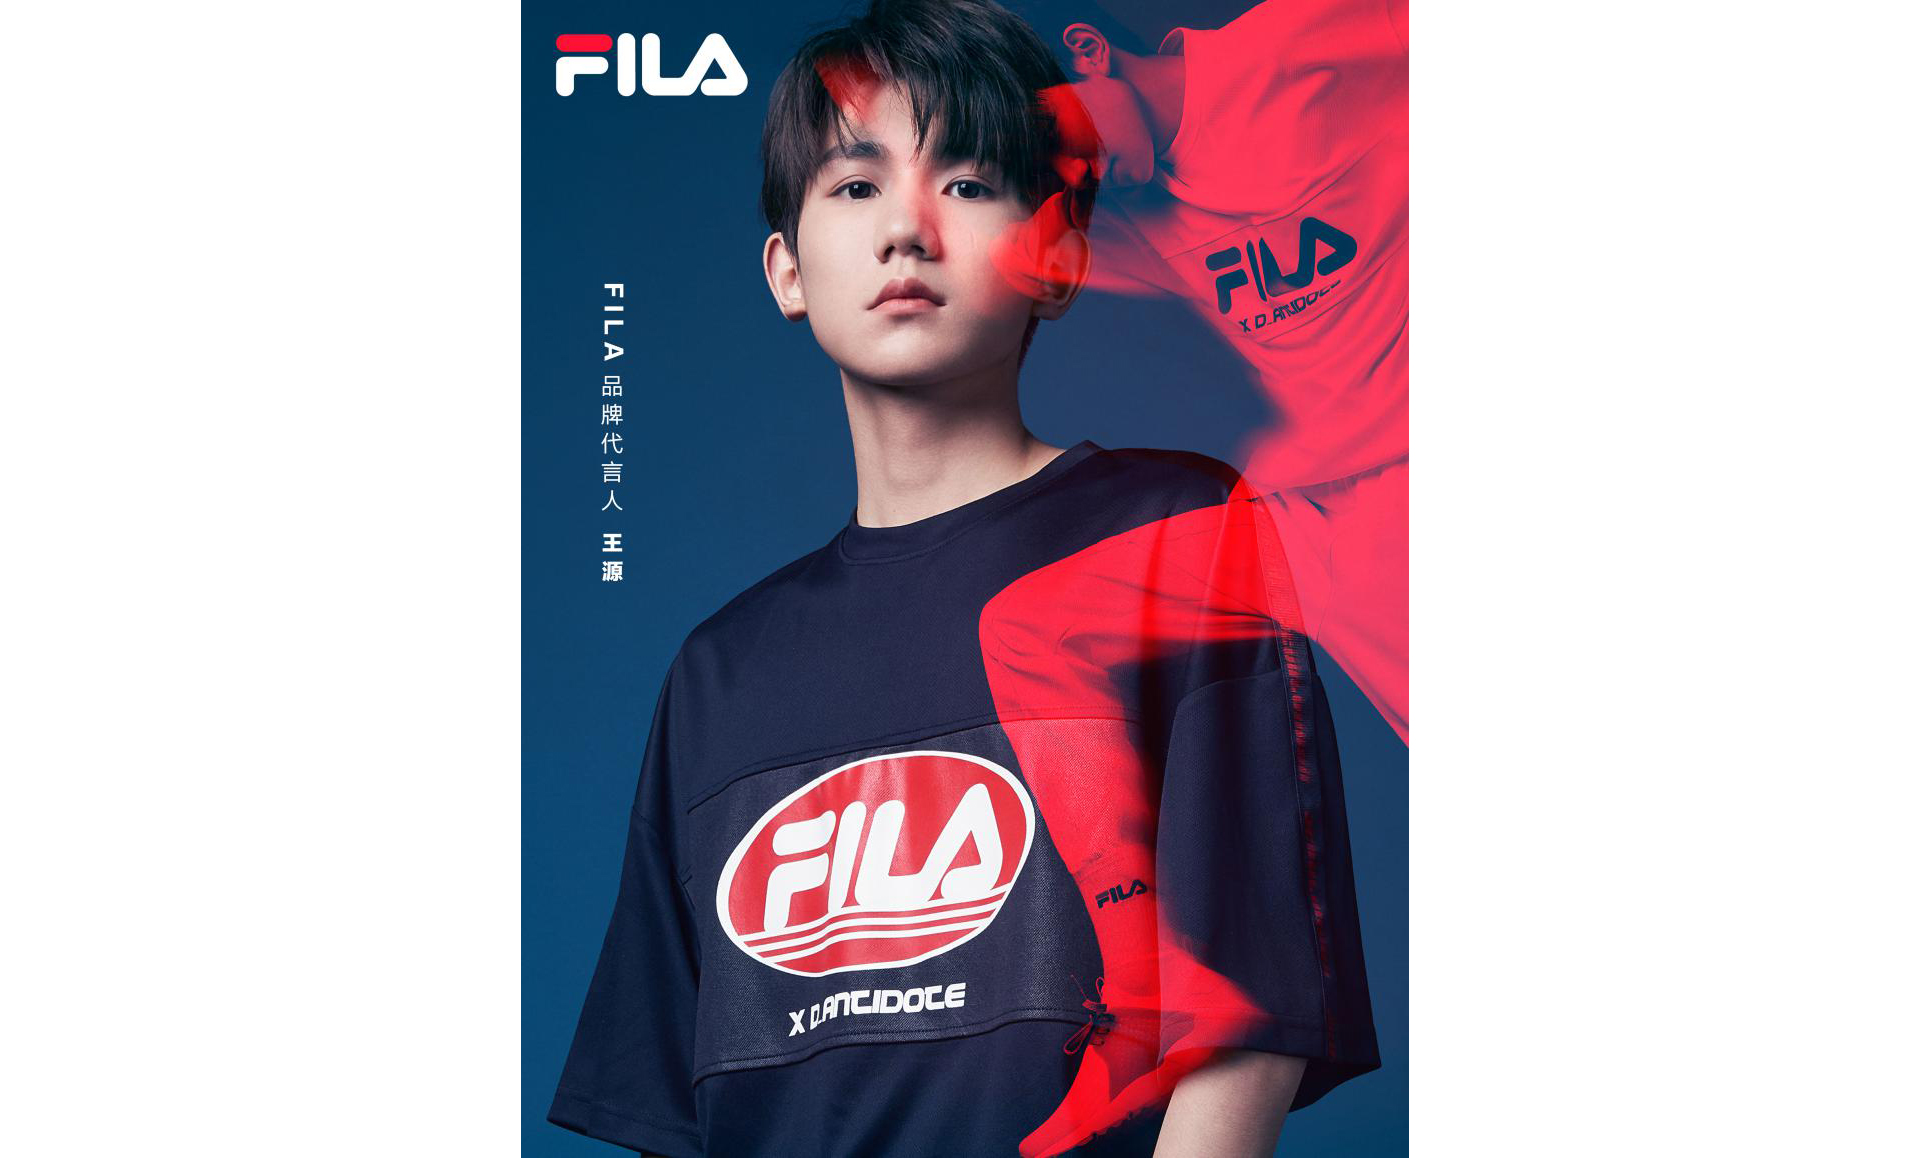 王源成为 FILA 全新品牌代言人